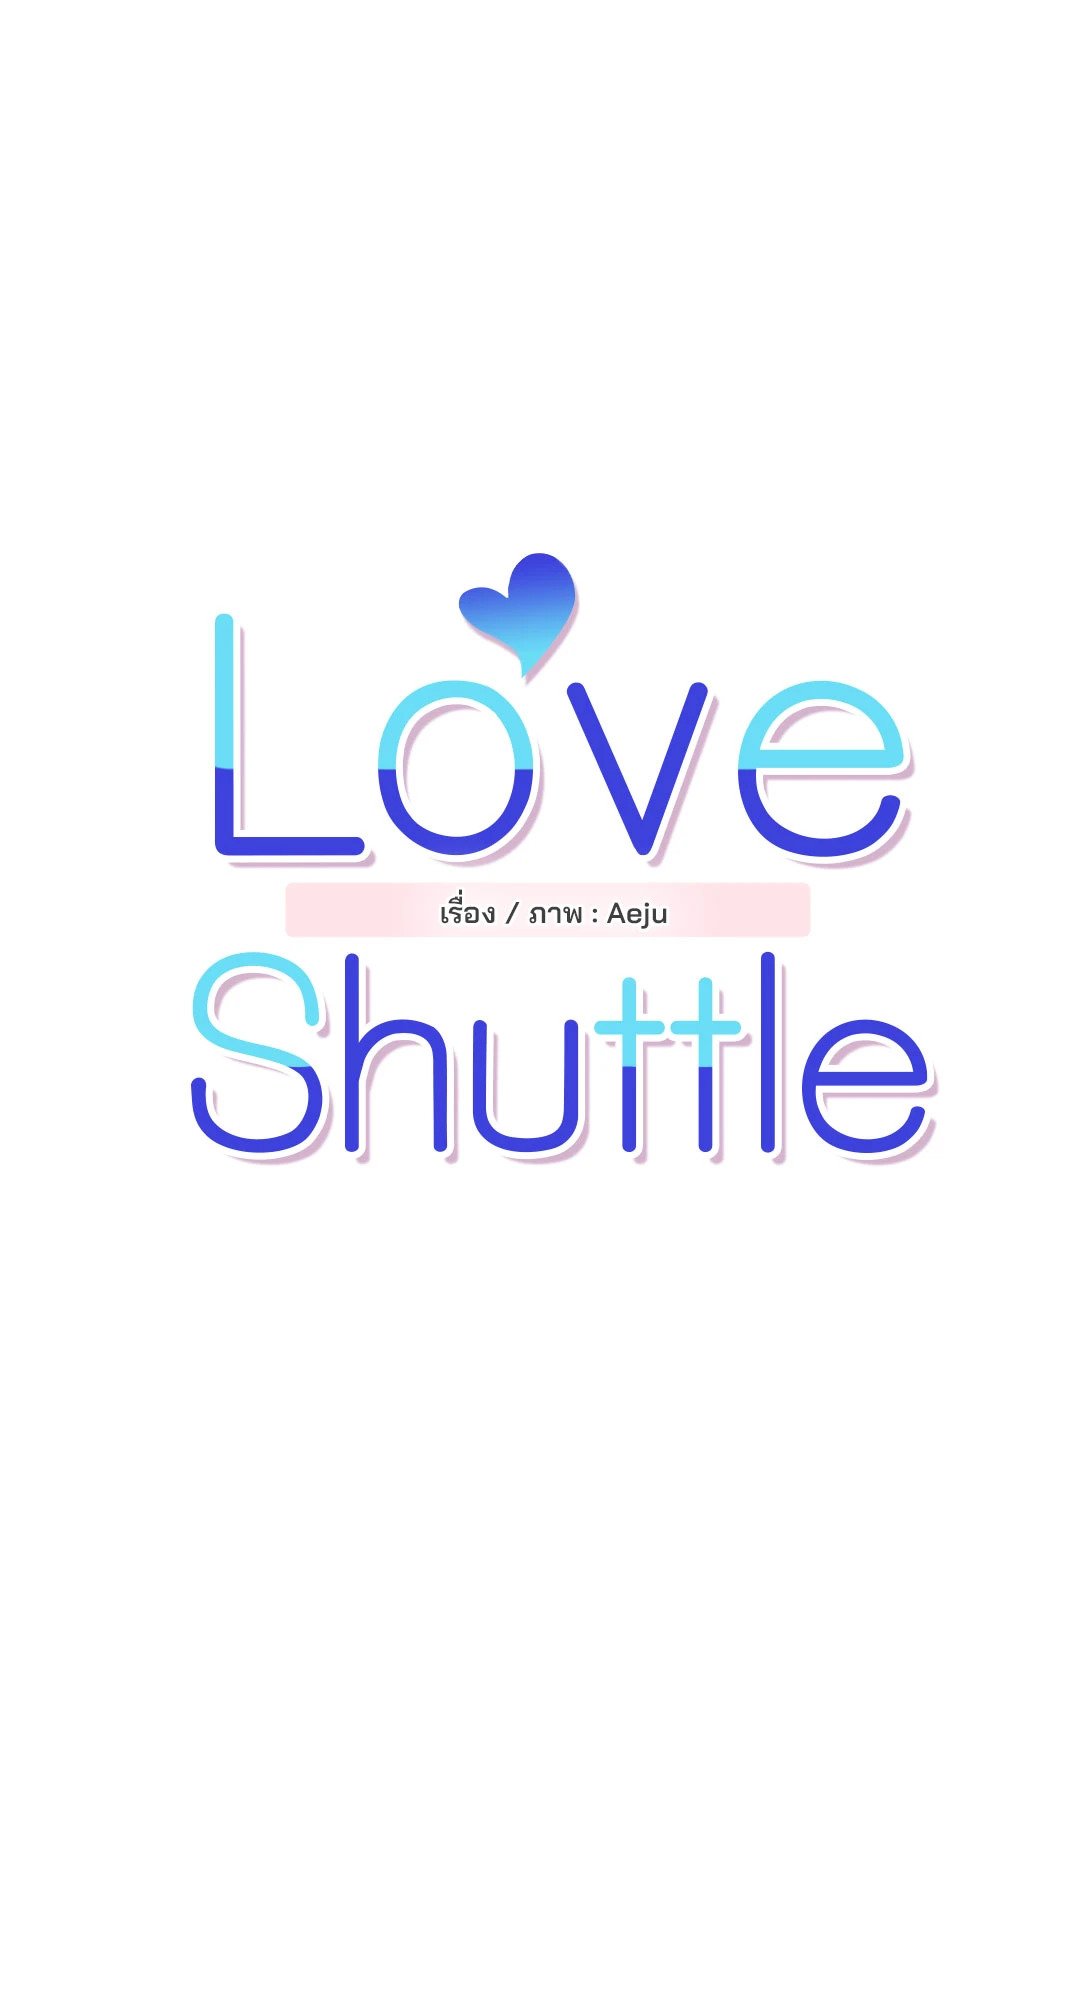 Love Shuttle 23 06